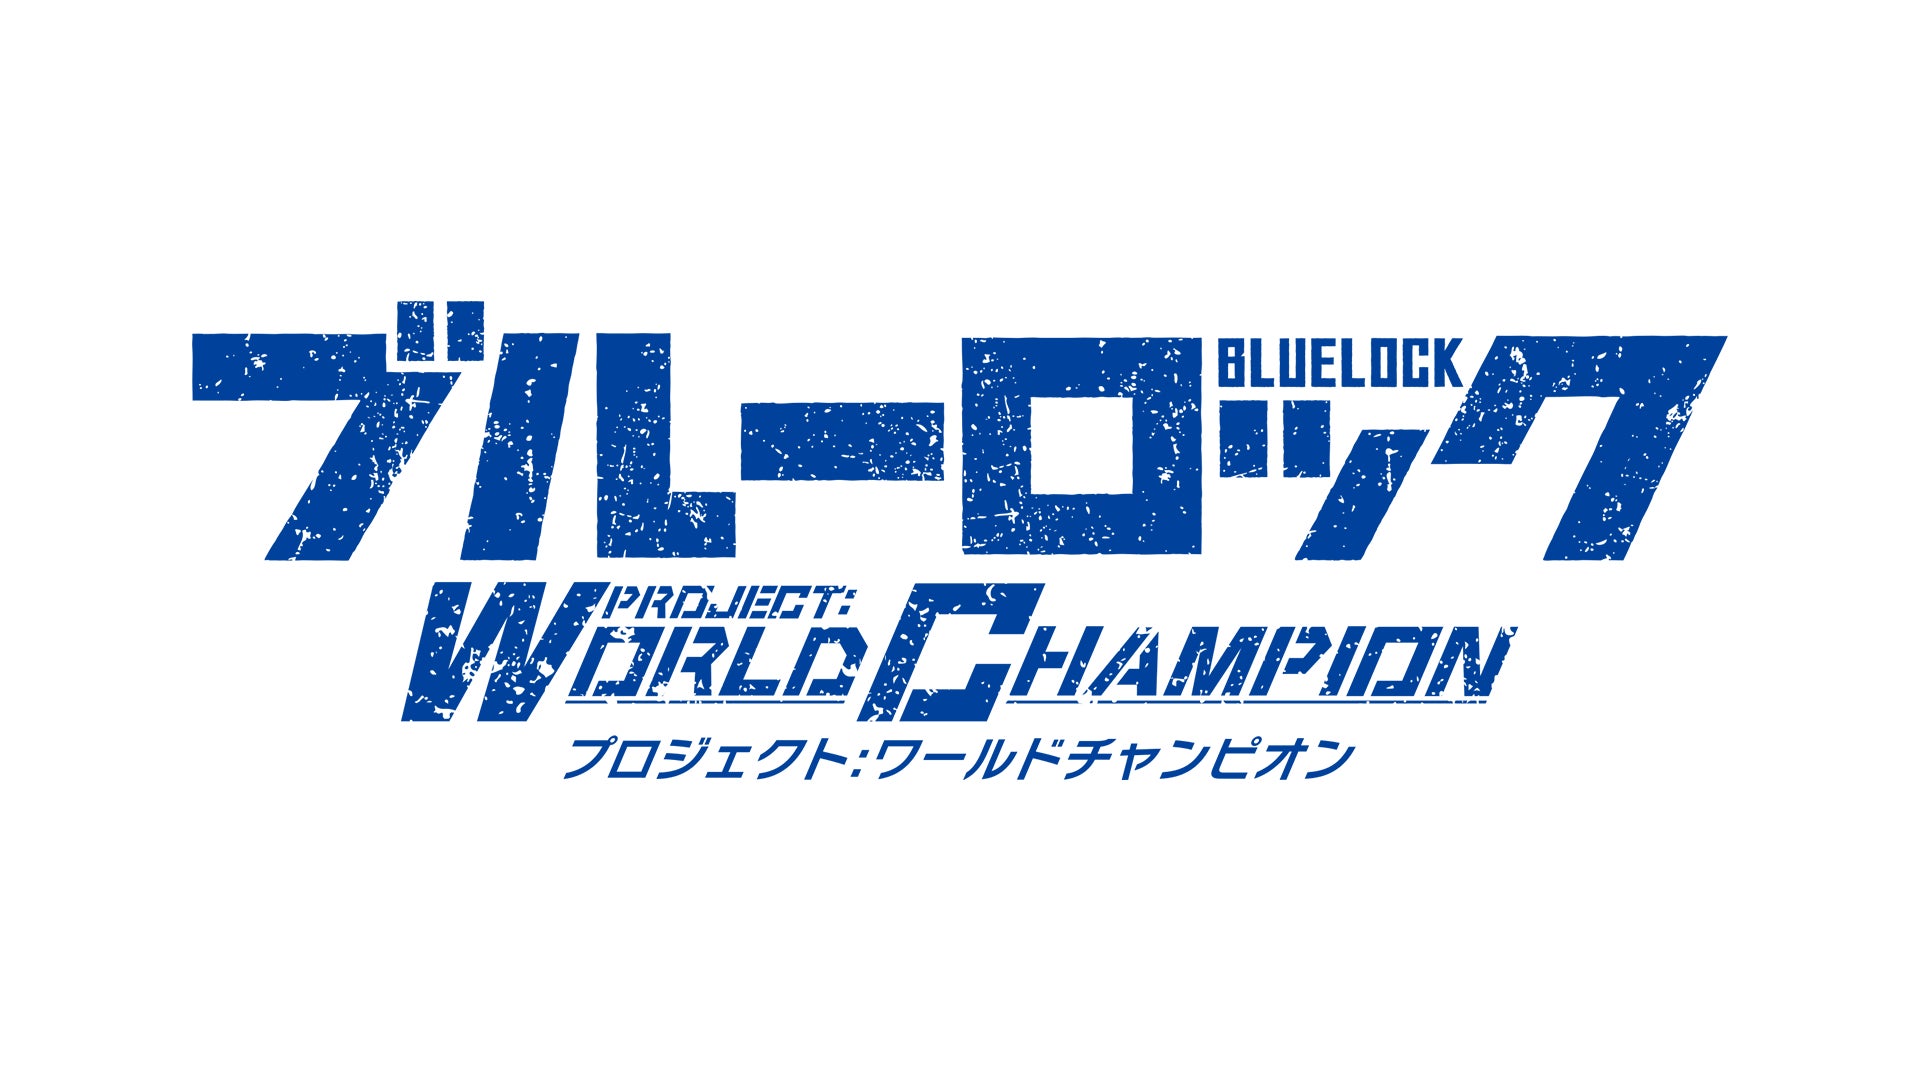 新作ゲーム『ブルーロック プロジェクト:ワールドチャンピオン』正式サービス開始のお知らせ